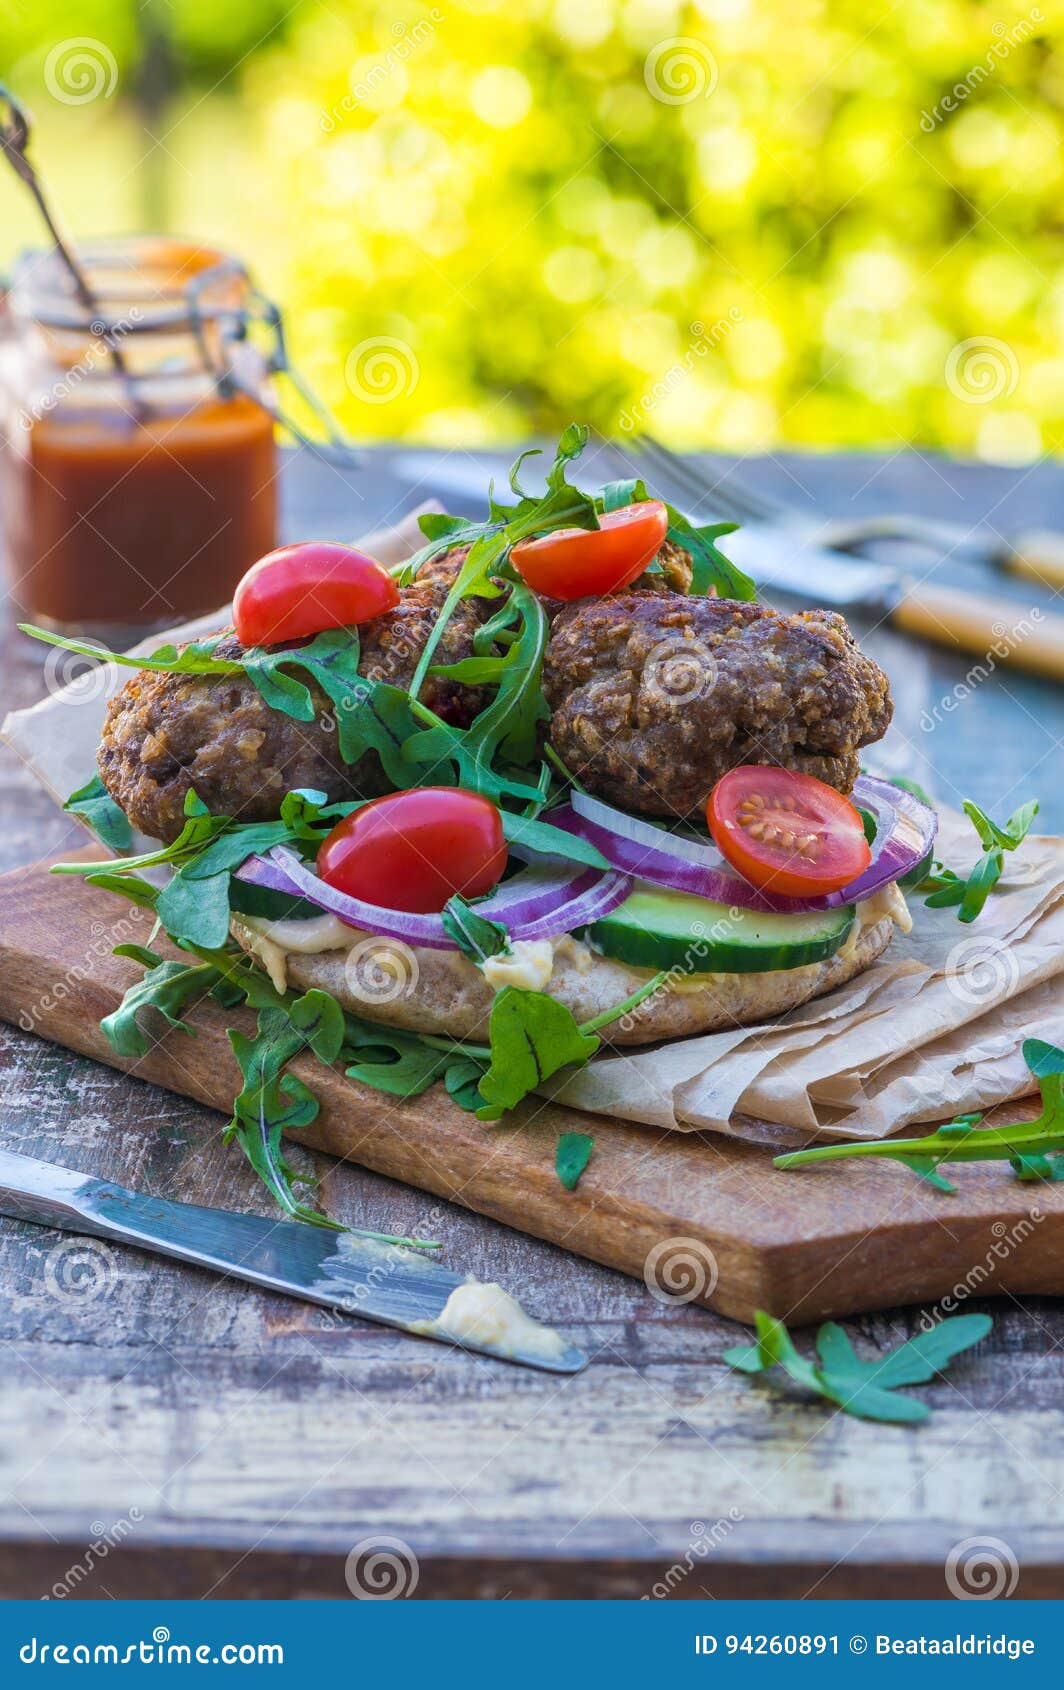 Turkish Style Lamb Kofta on Pitta Bread Stock Image - Image of closeup ...